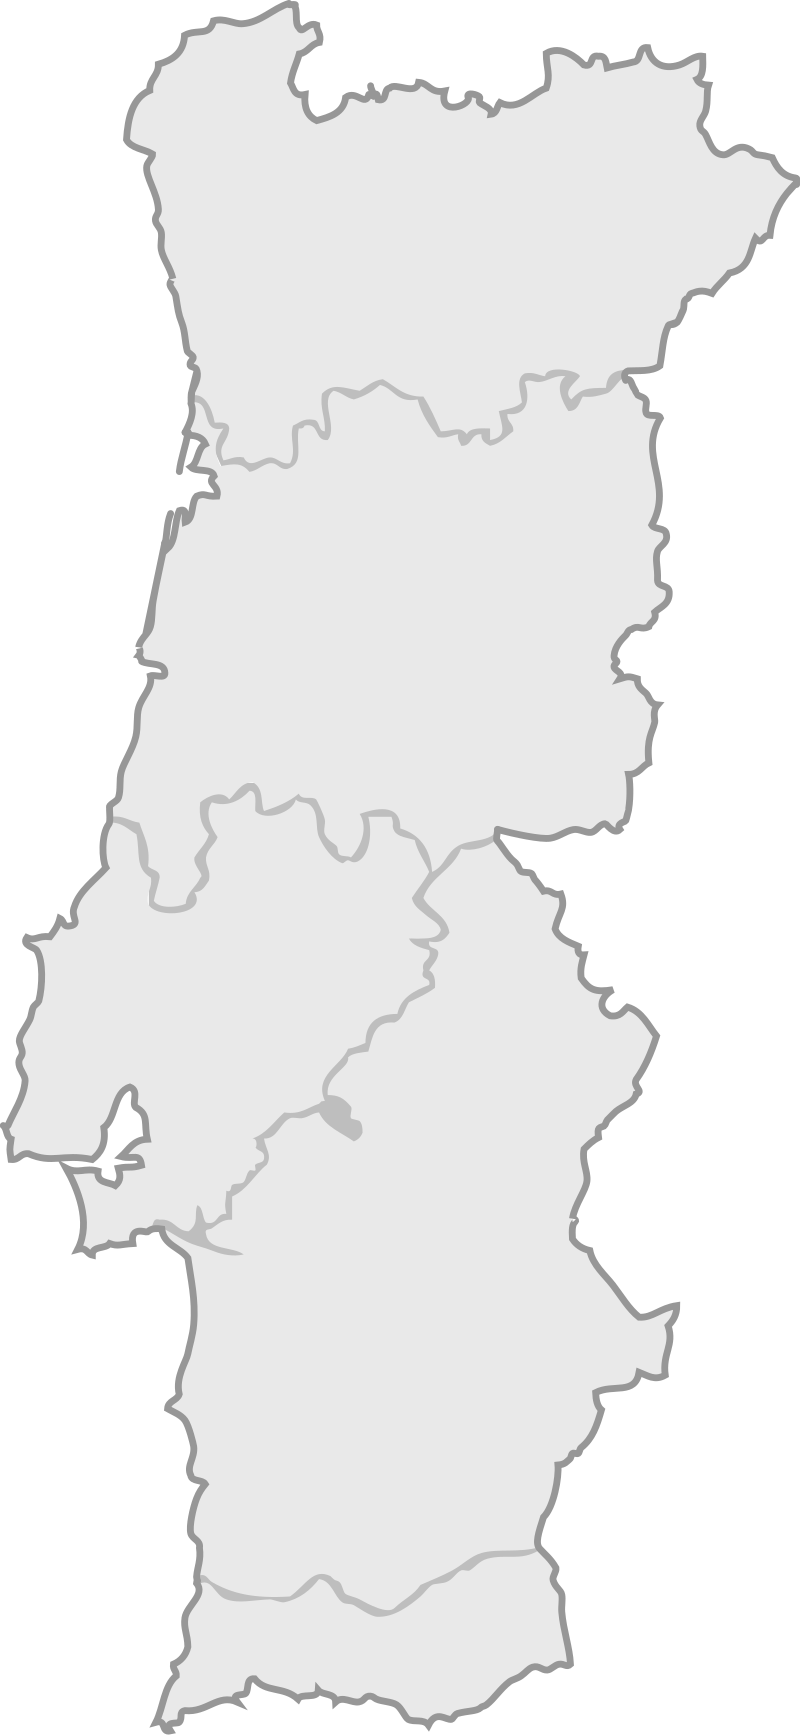 File:Mapa de Portugal (subdivisiones).svg - Wikipedia